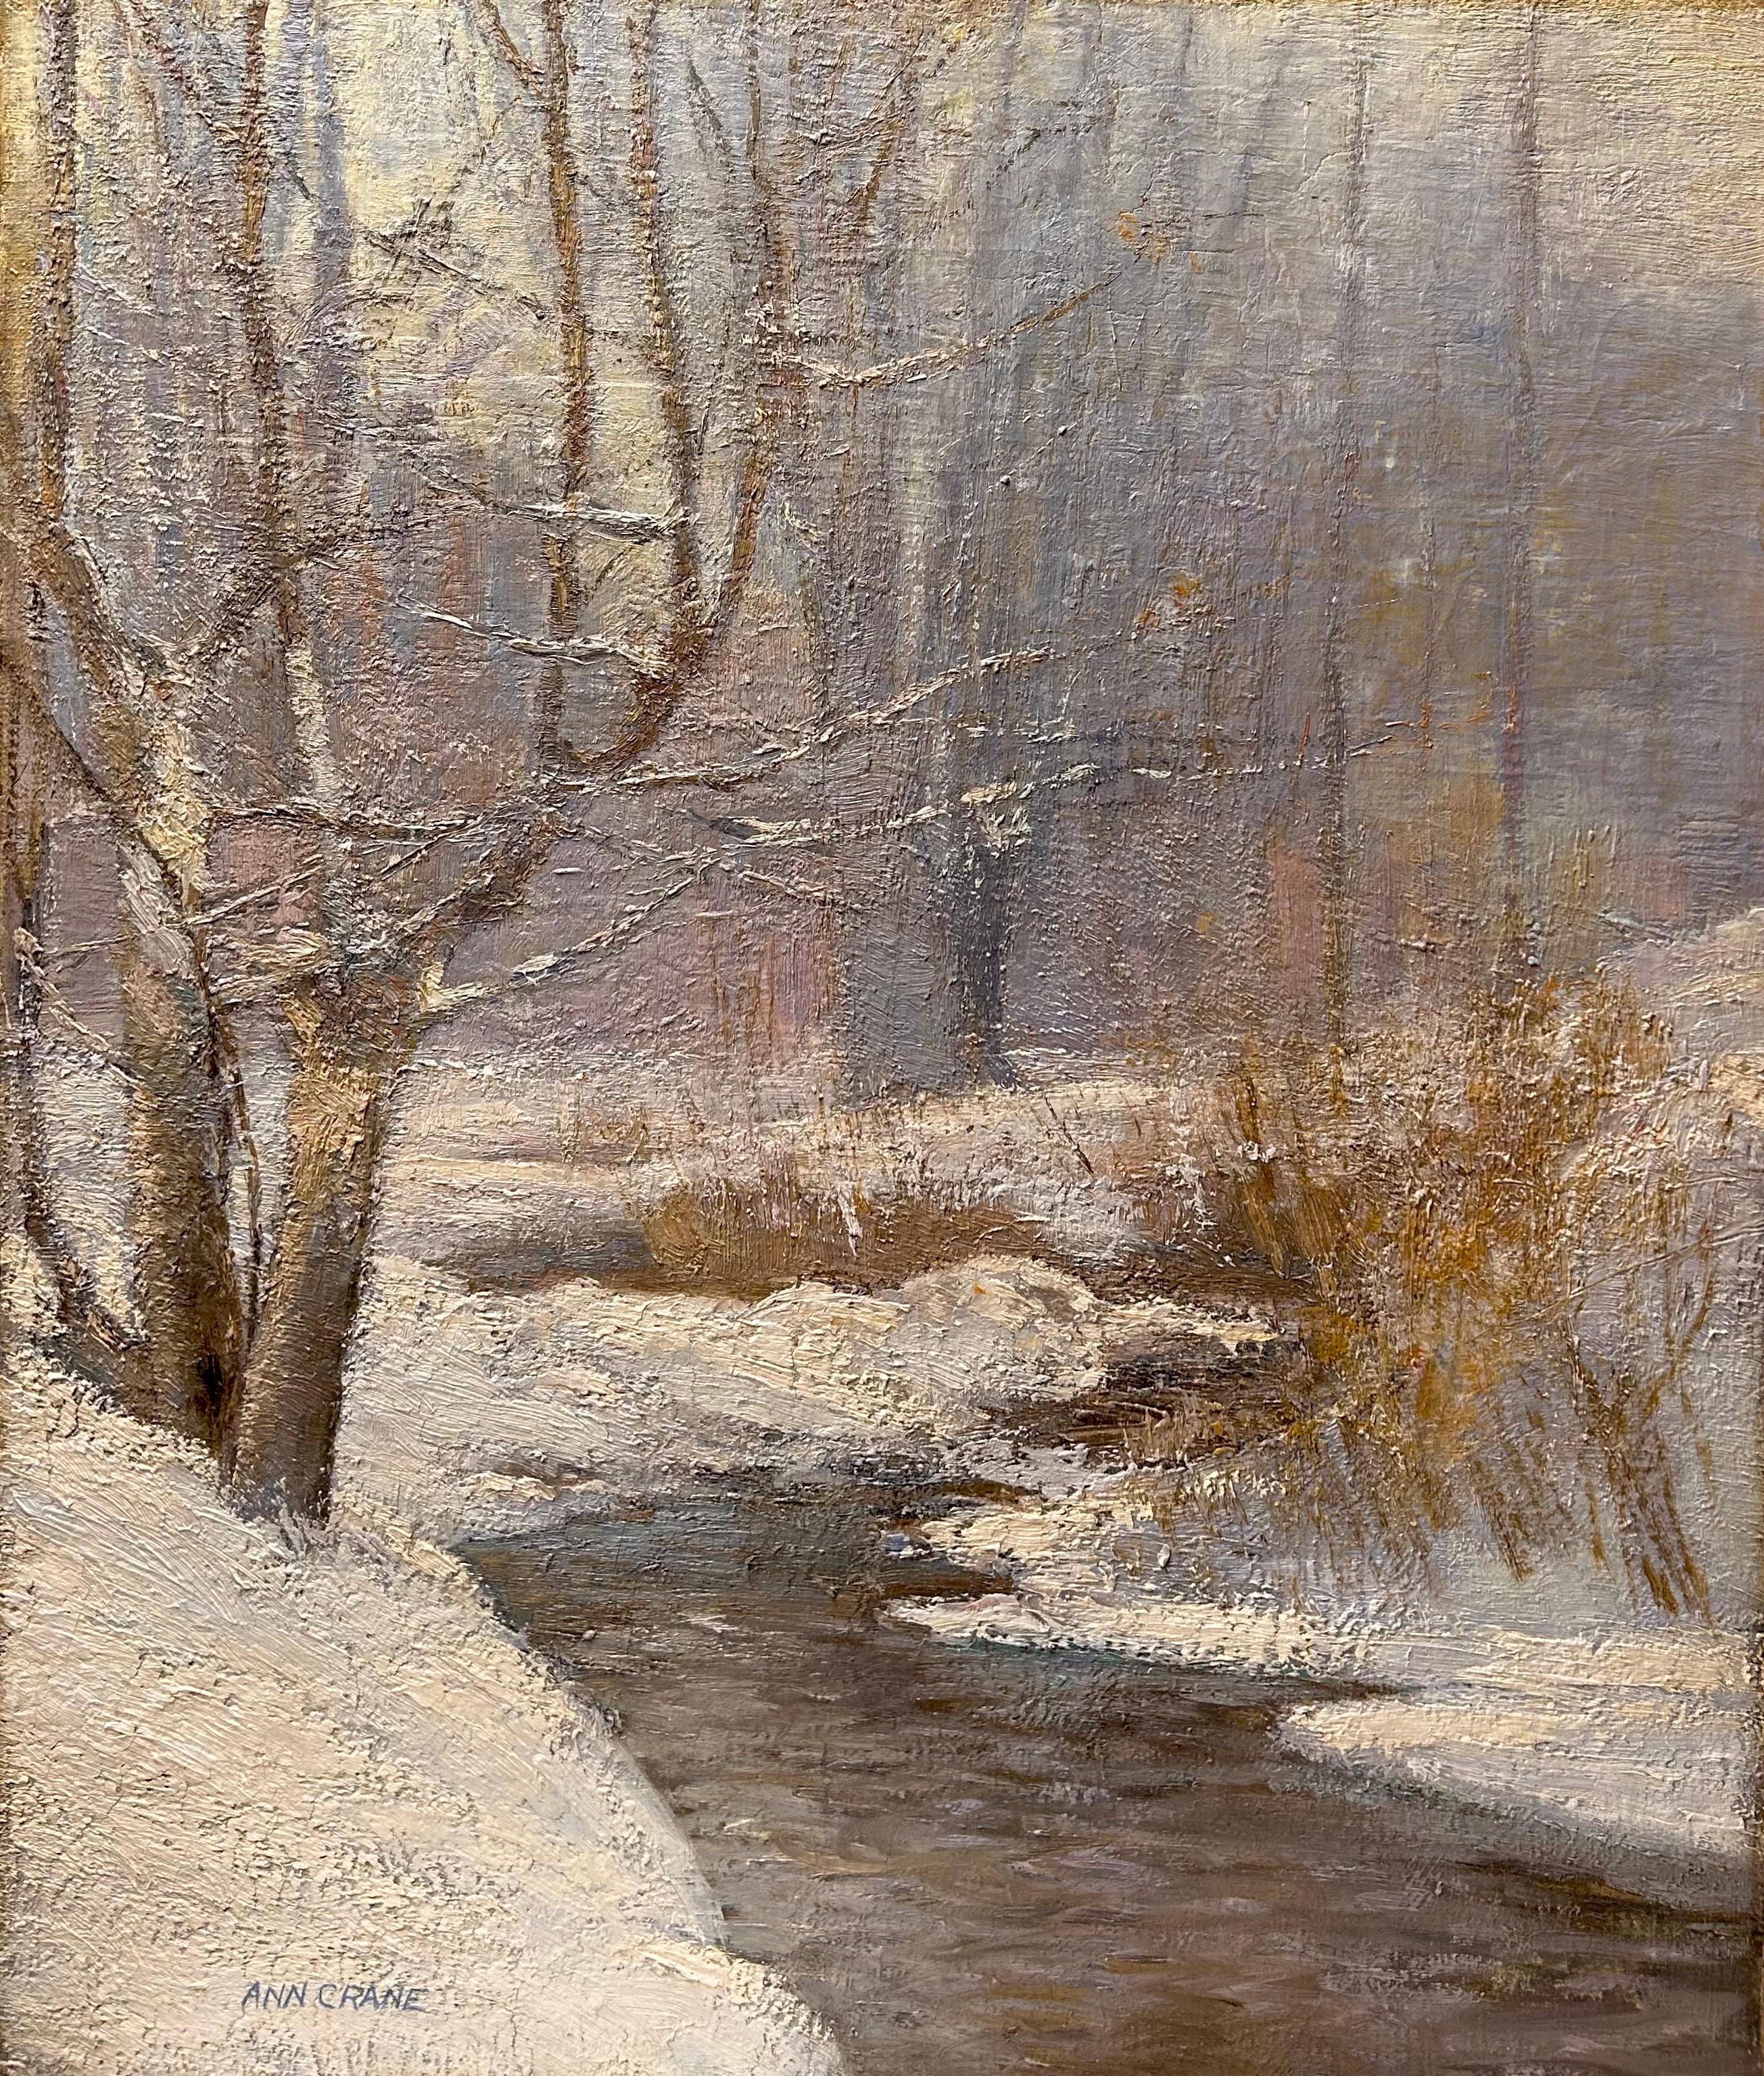 Landscape Painting Ann Crane - Paysage d'hiver